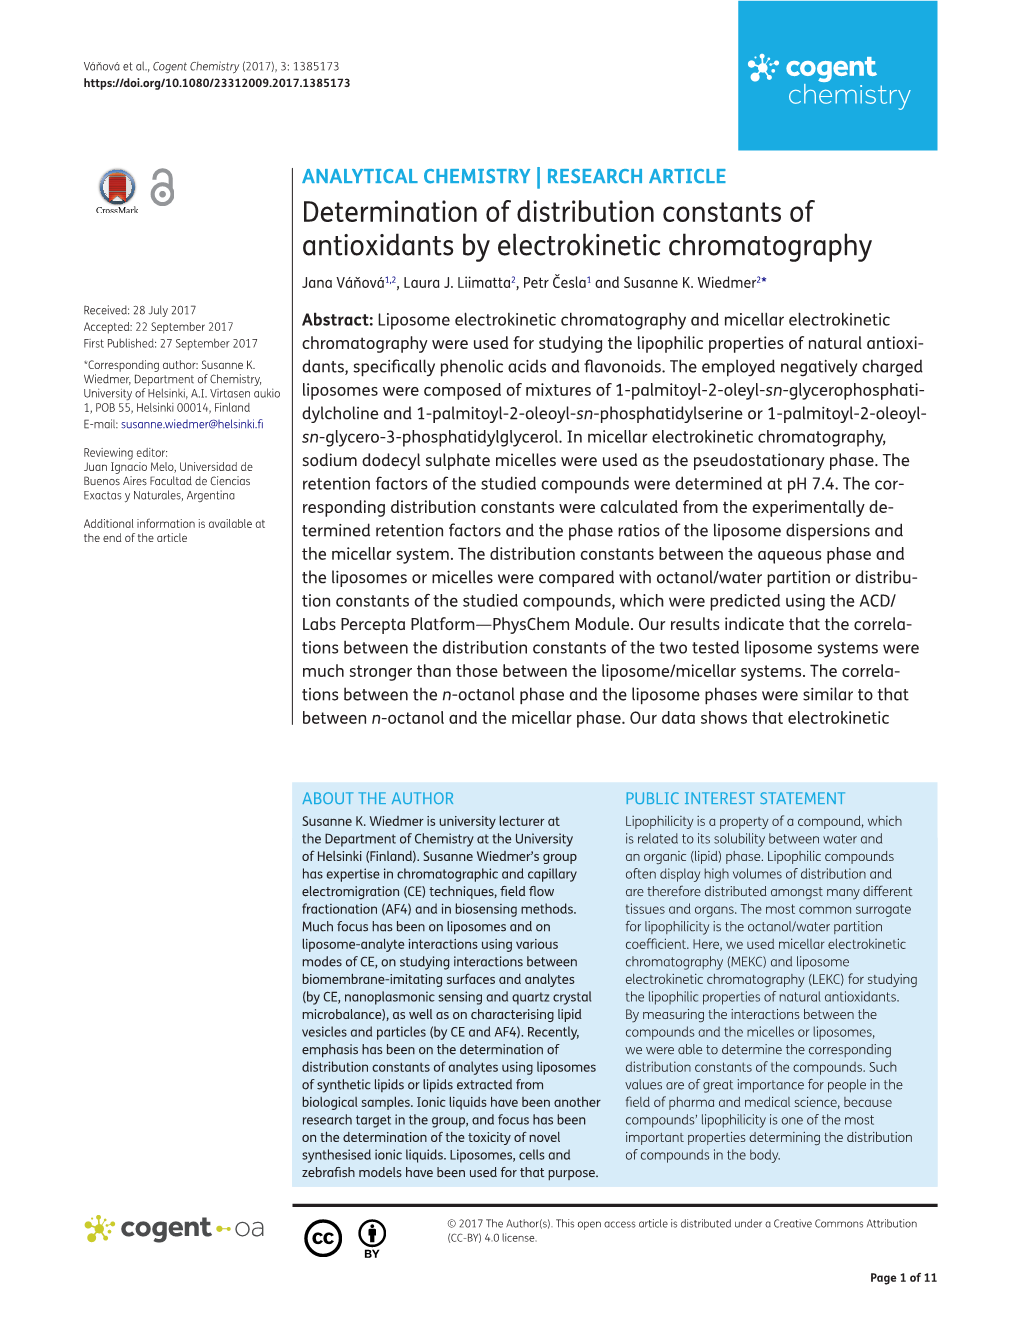 Determination of Distribution Constants of Antioxidants by Electrokinetic Chromatography Jana Váňová1,2, Laura J